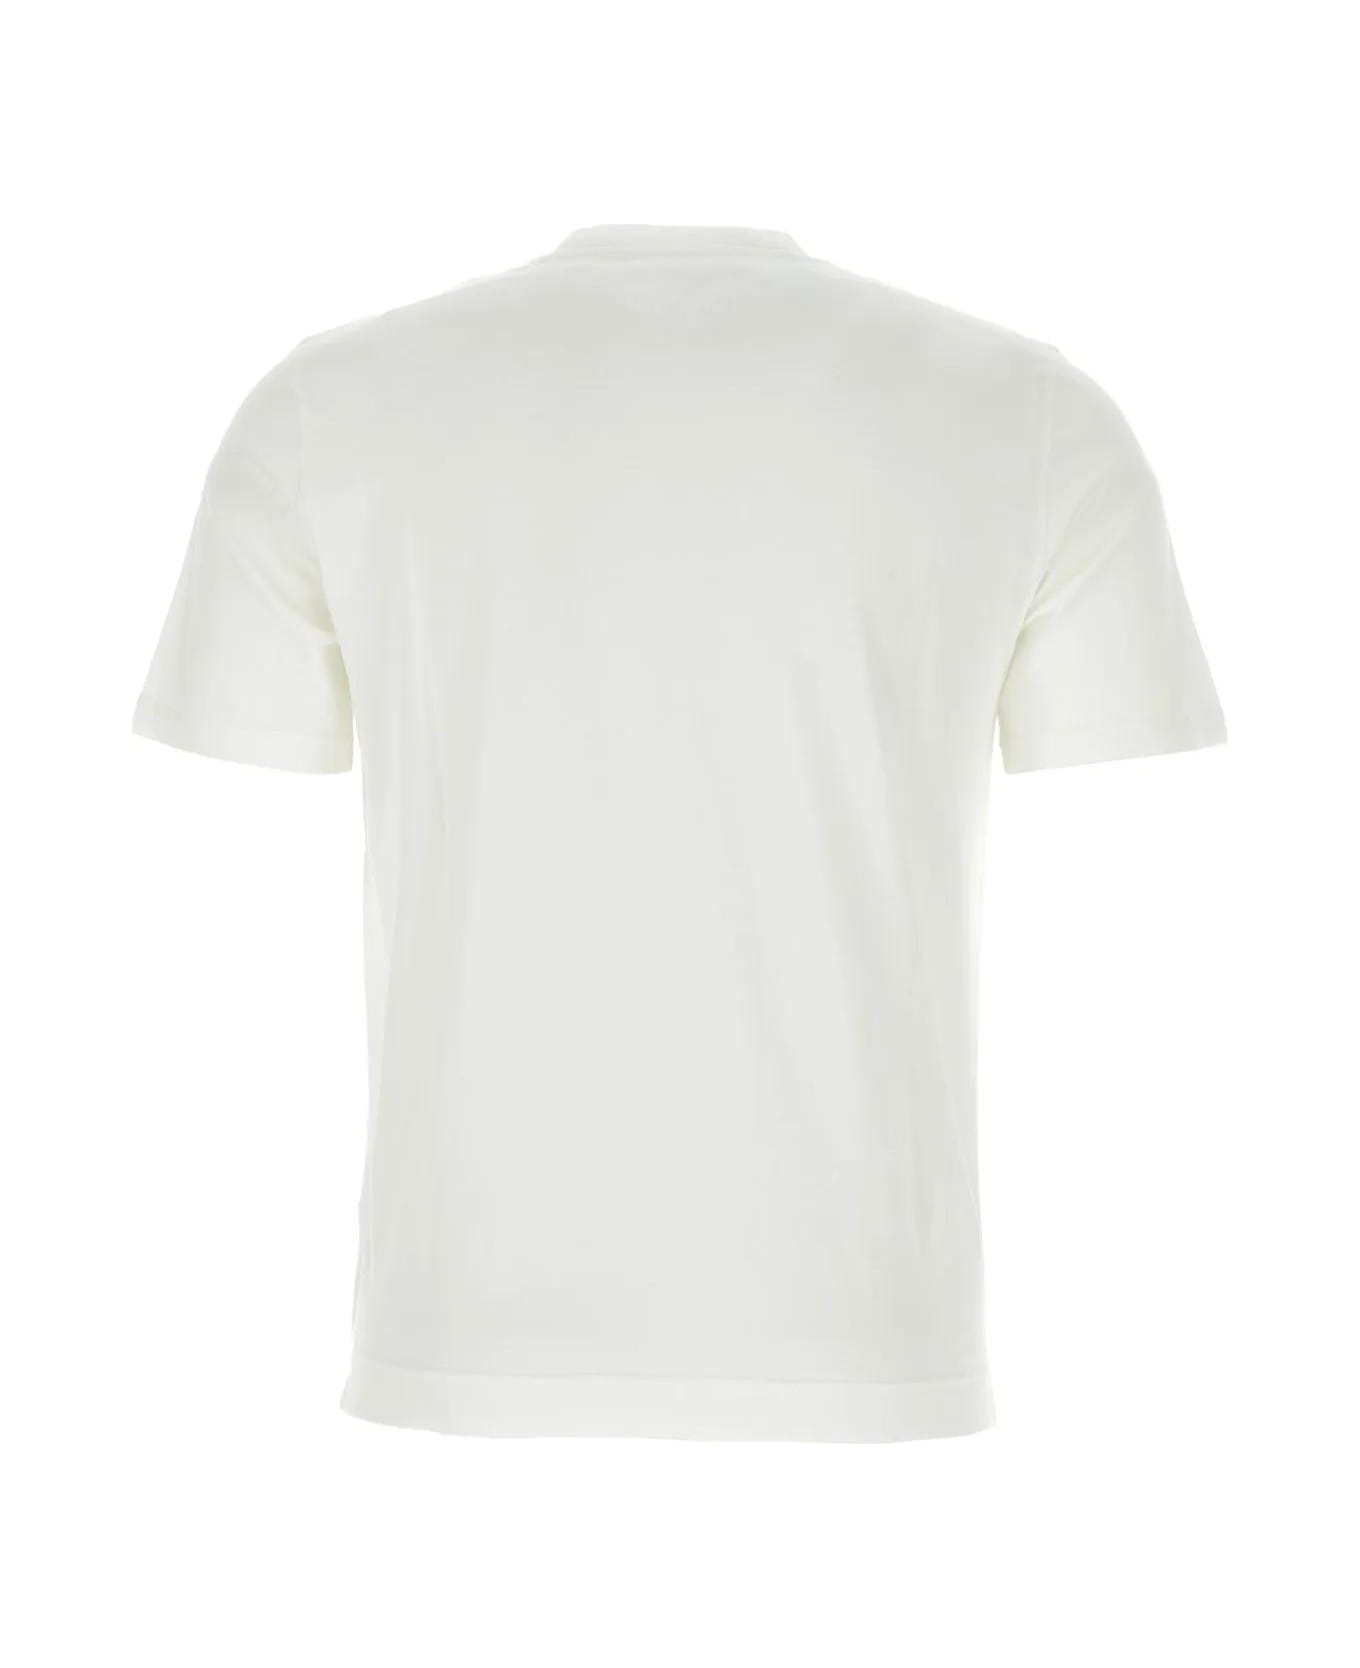 Fedeli White Cotton T-shirt - WHITE シャツ